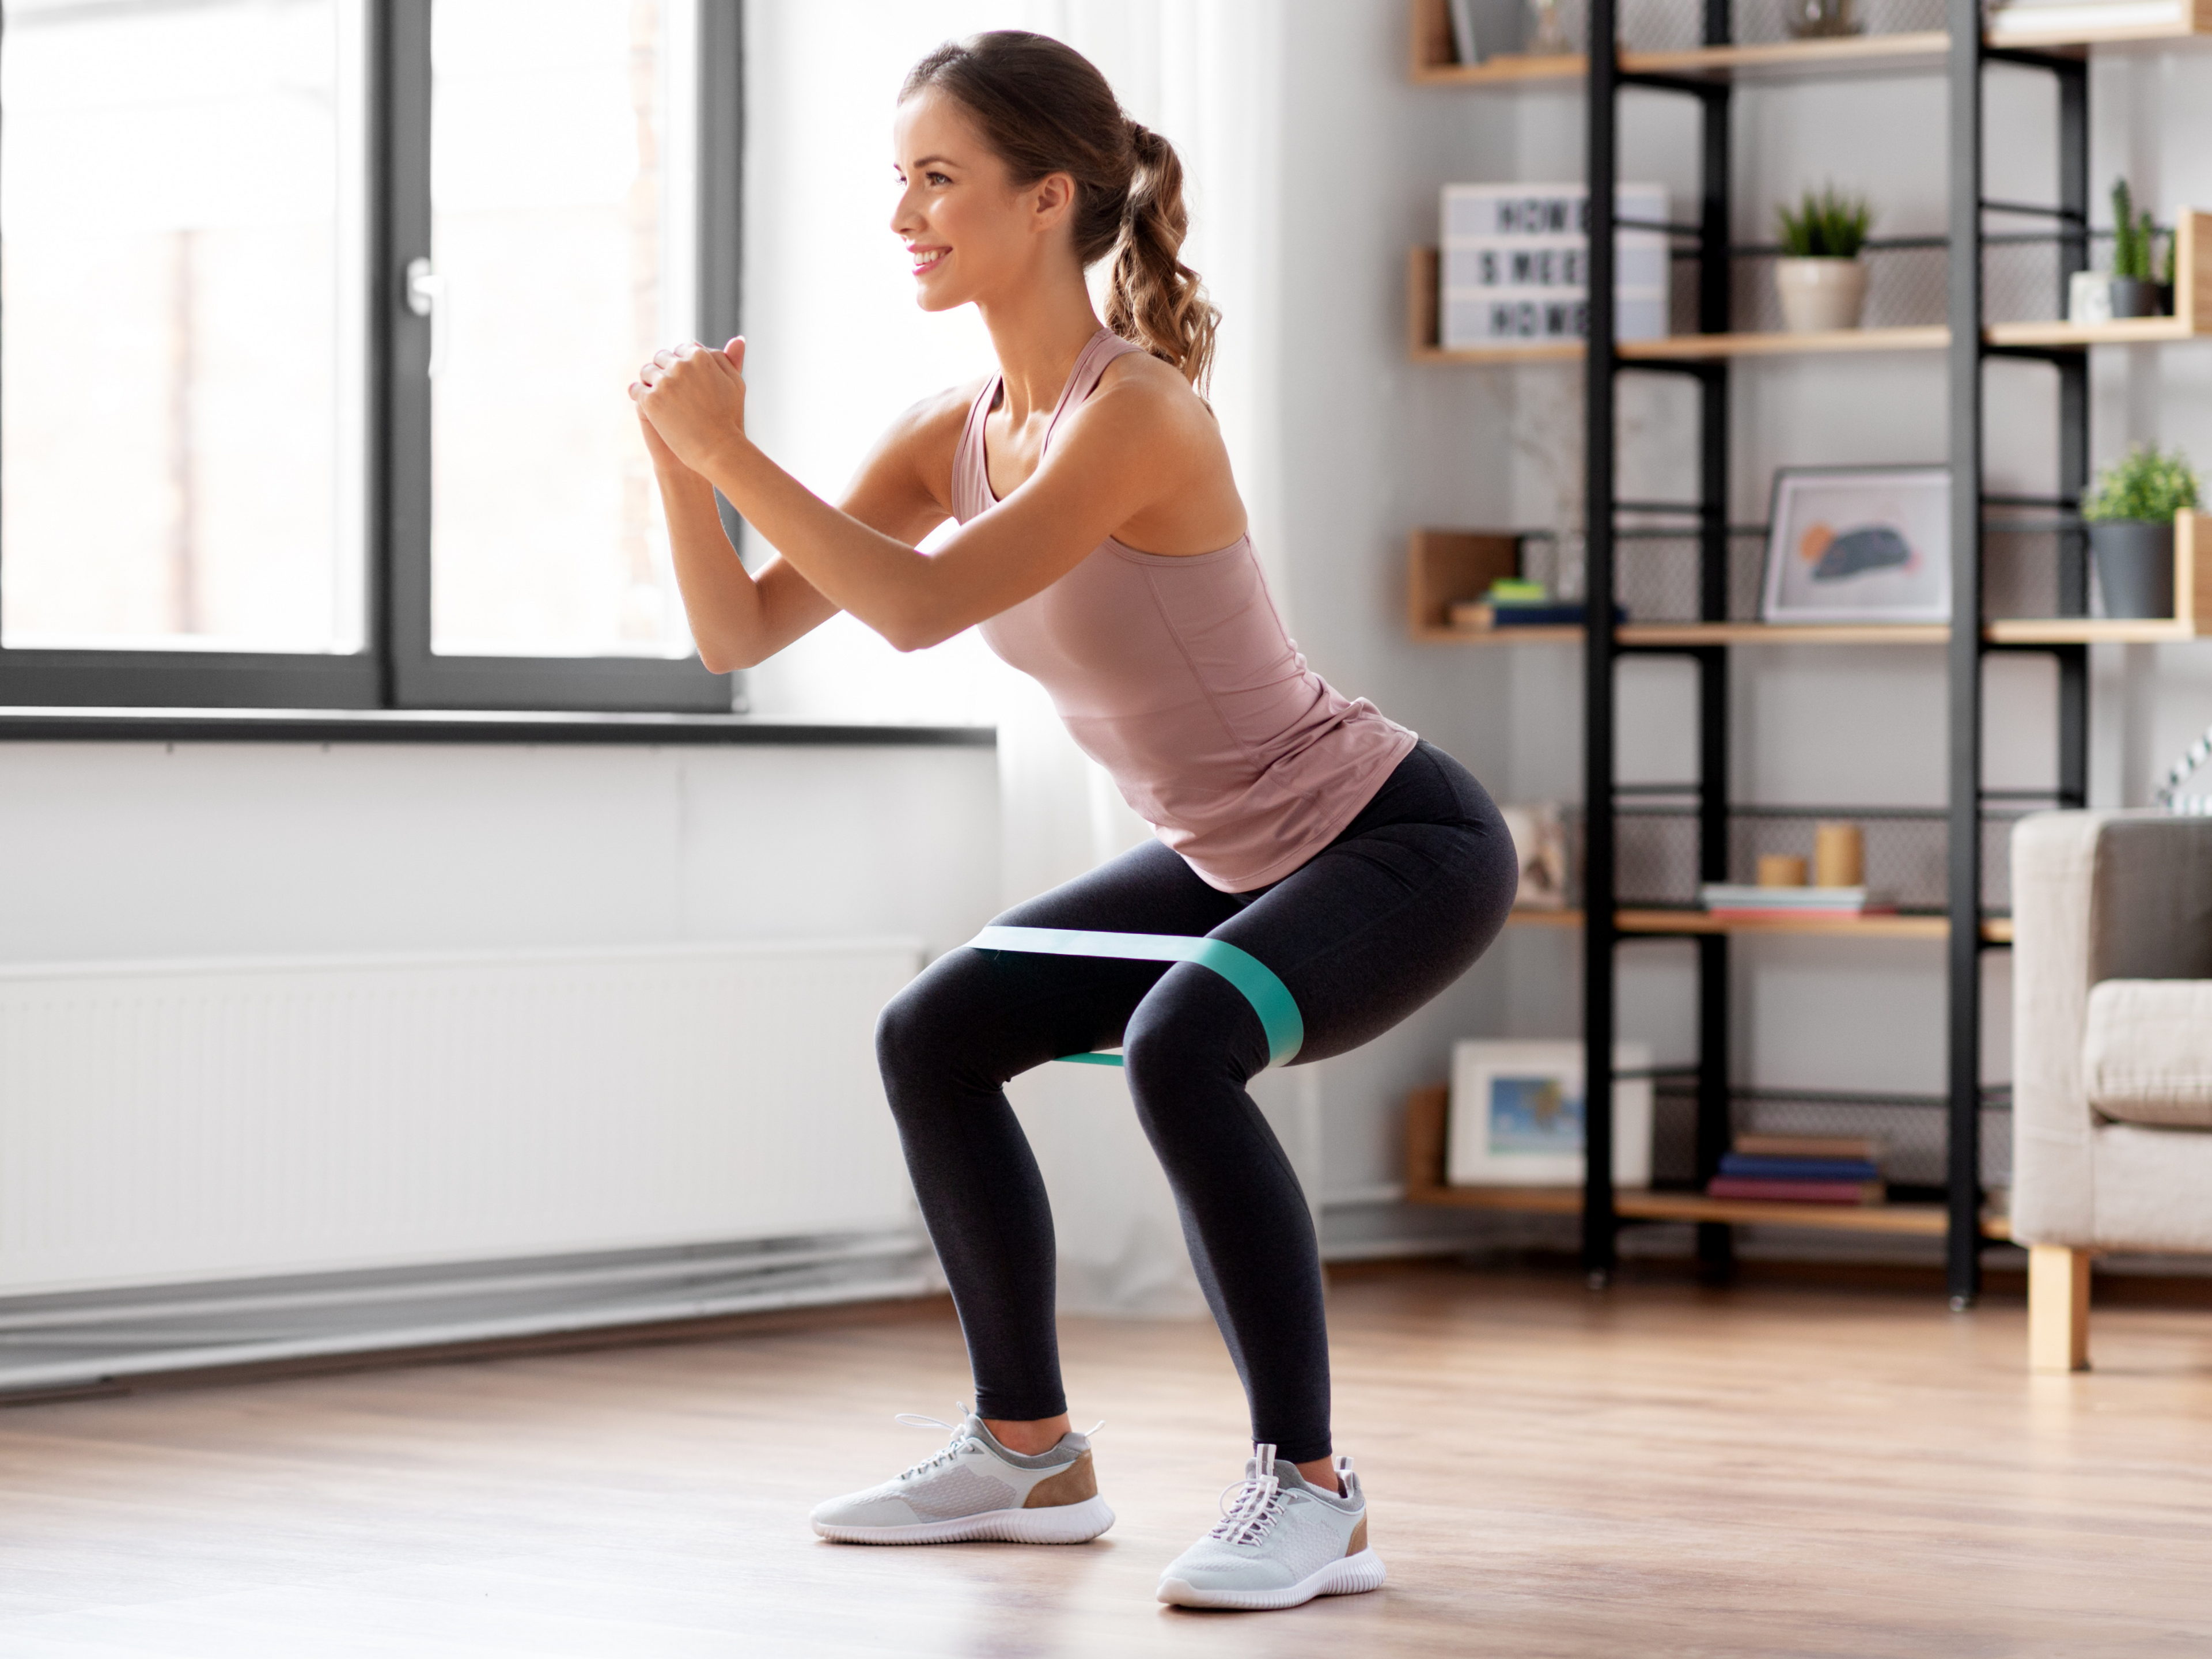 Femme effectuant un squat au poids du corps avec un miniband.